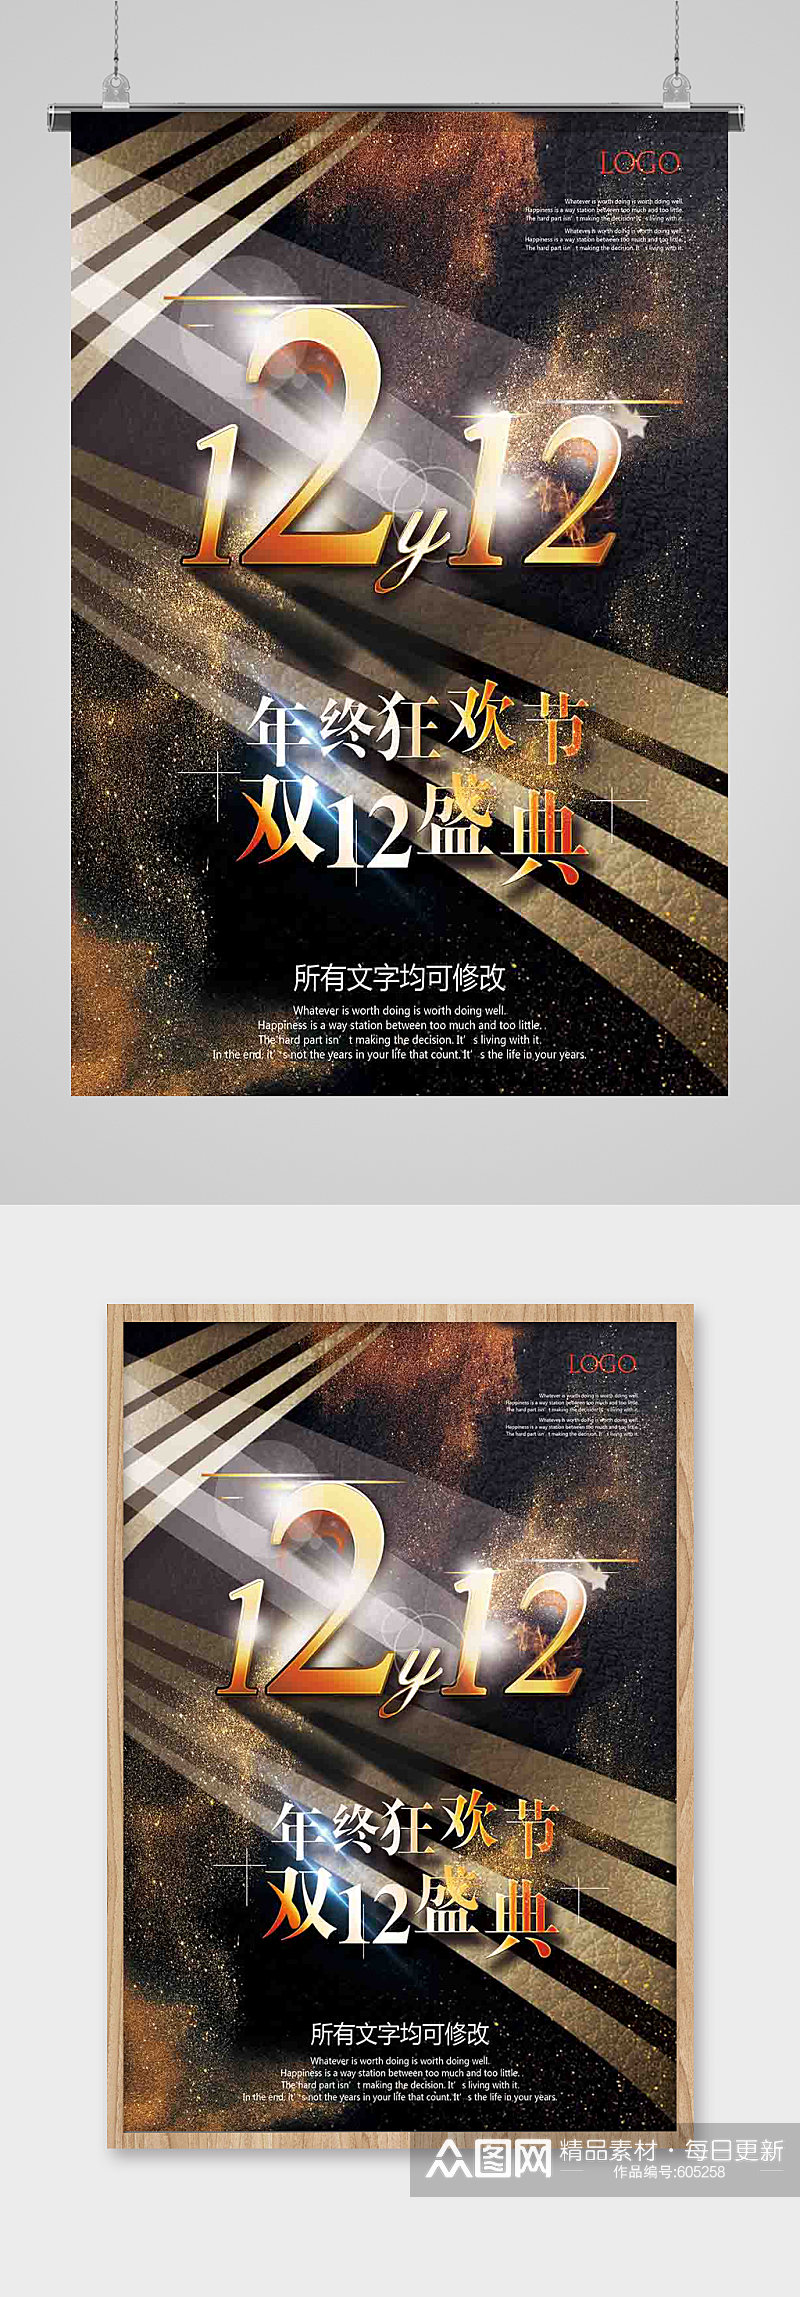 双十二购物狂欢节促销海报网店庆典天猫淘宝素材